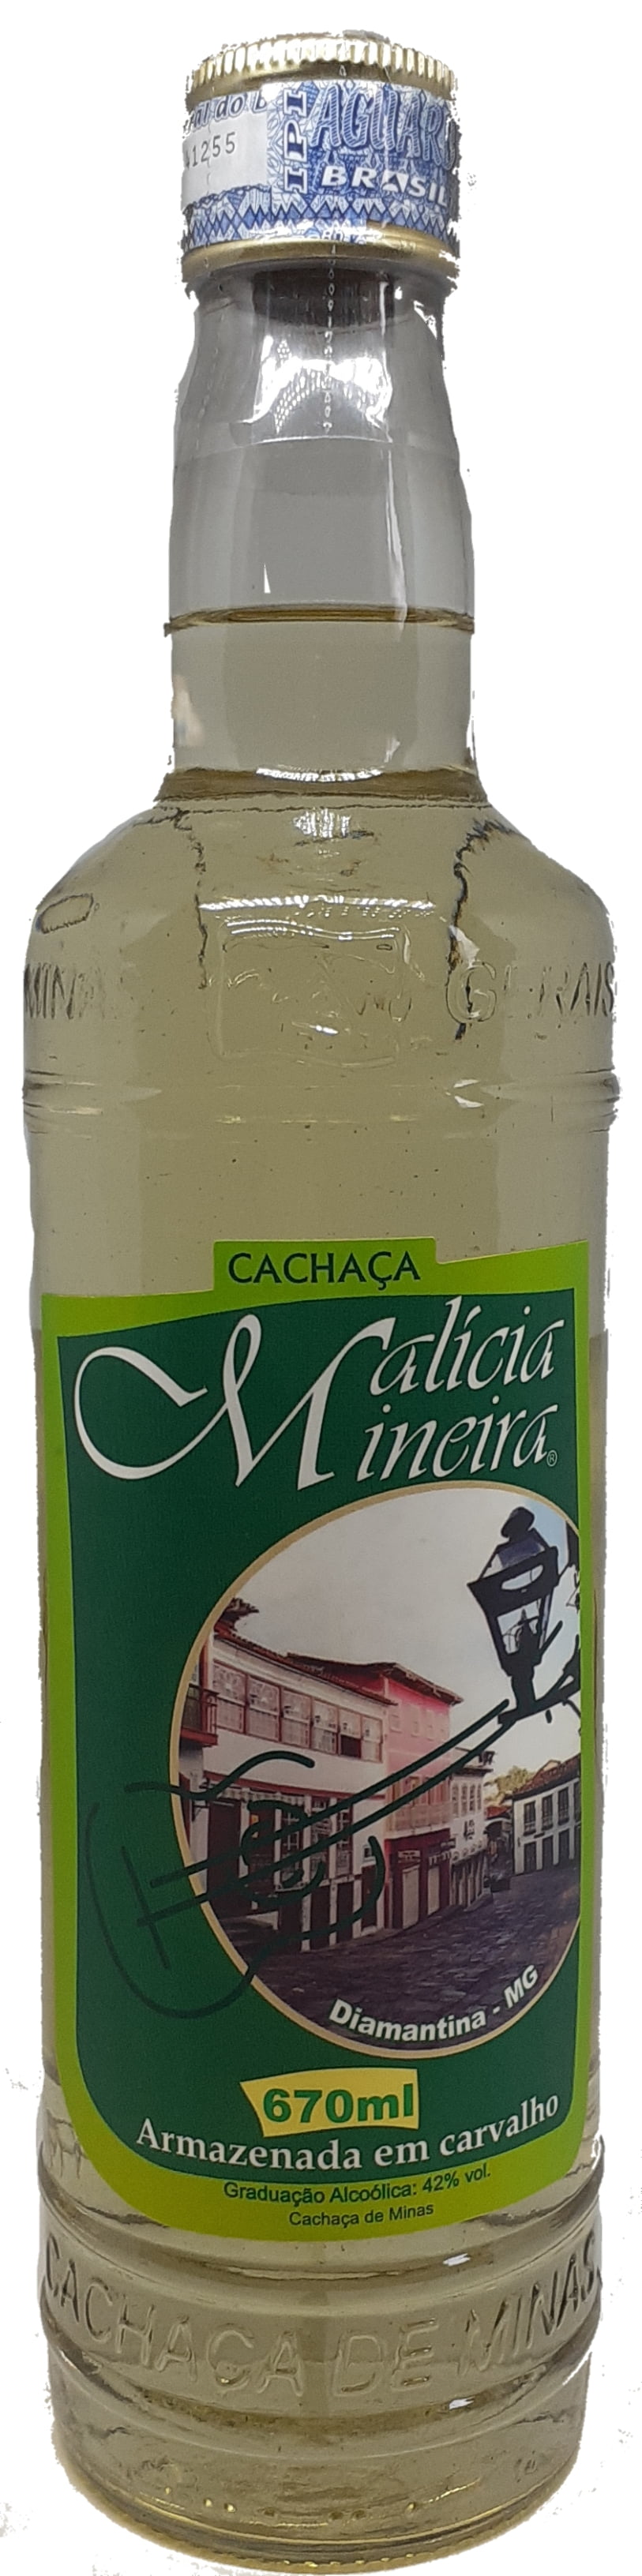 Cachaça Malícia Mineira Ouro Carvalho 670 ml